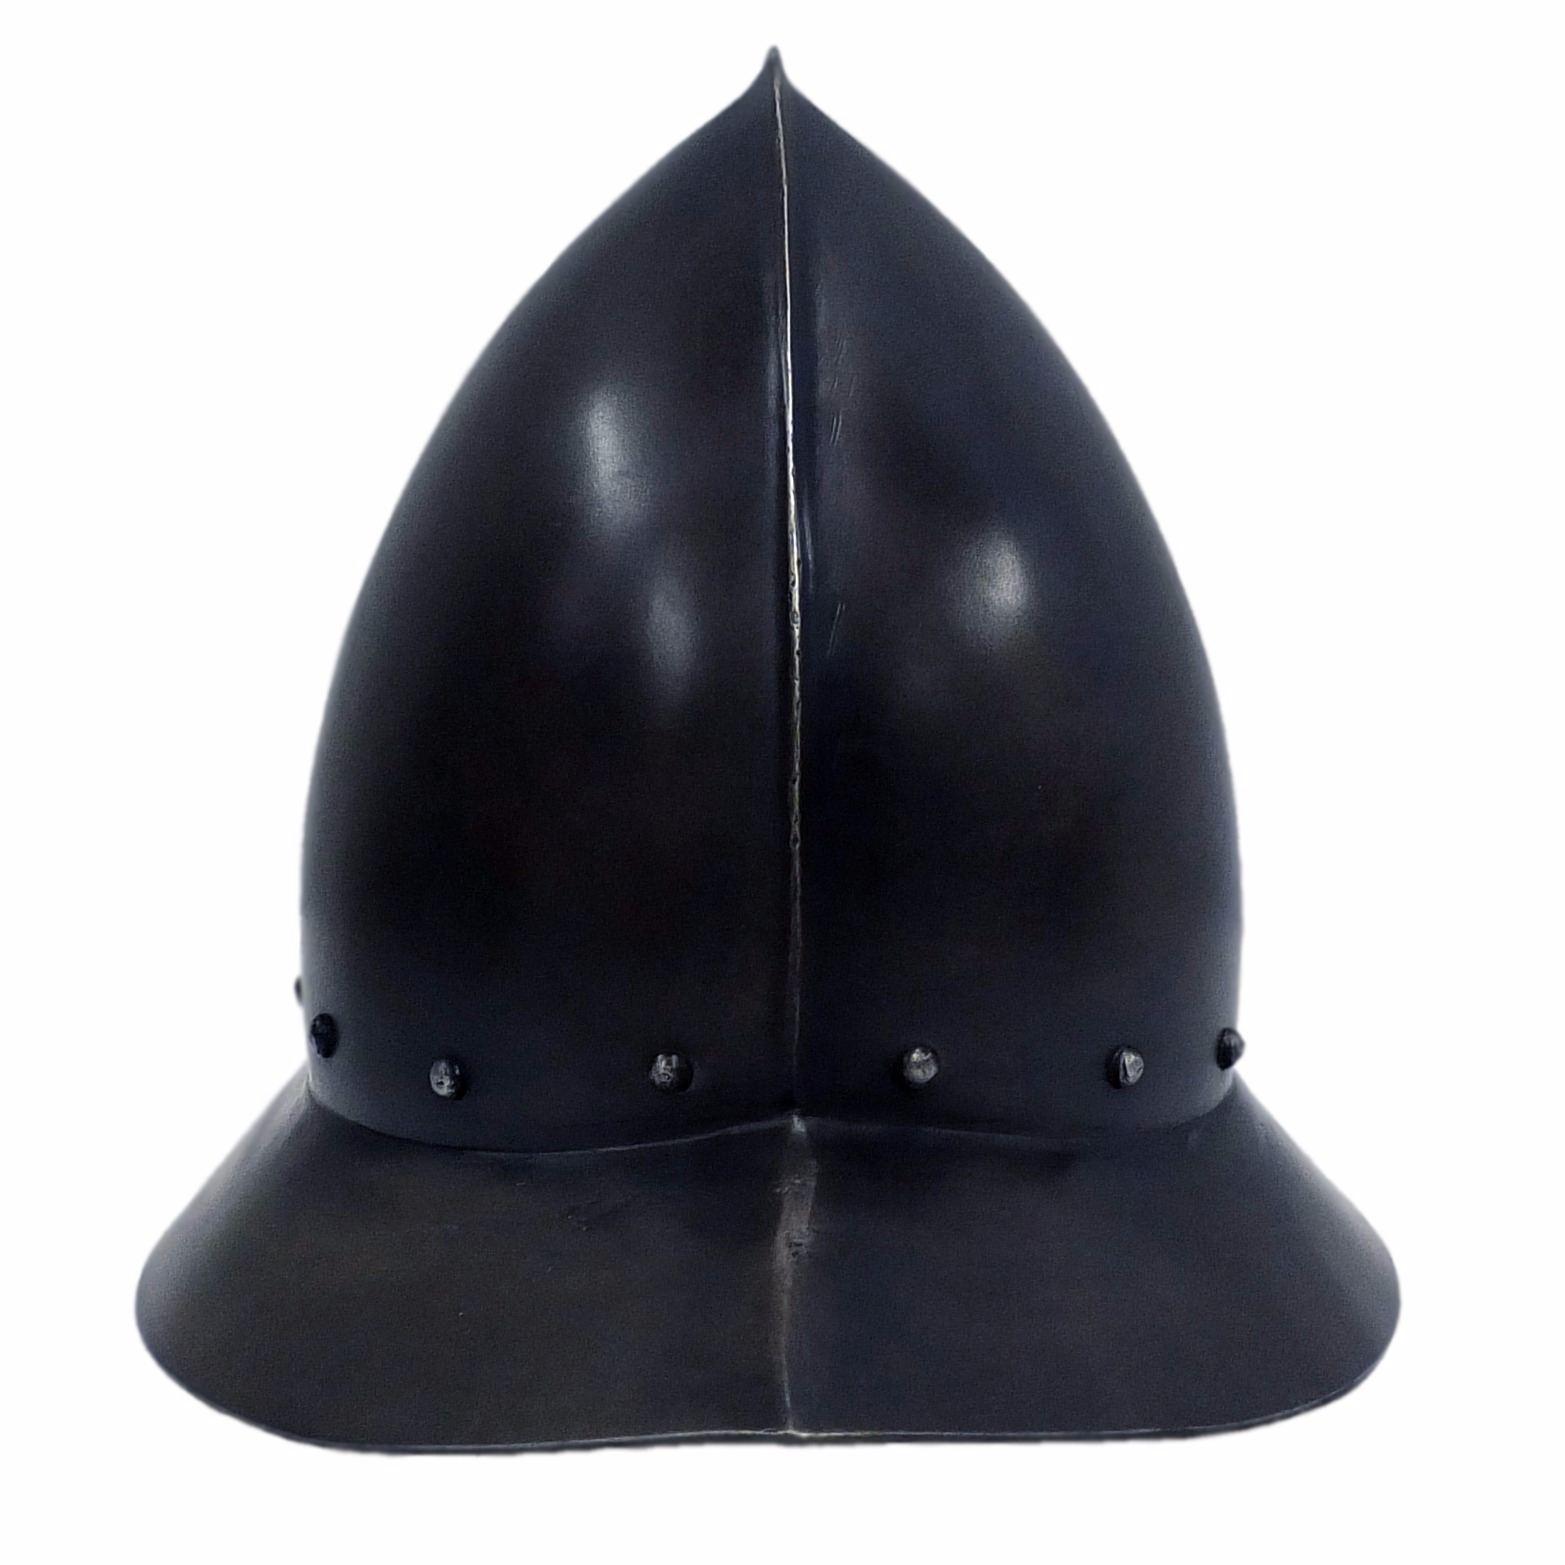 Spanish kettle hat larp helmet